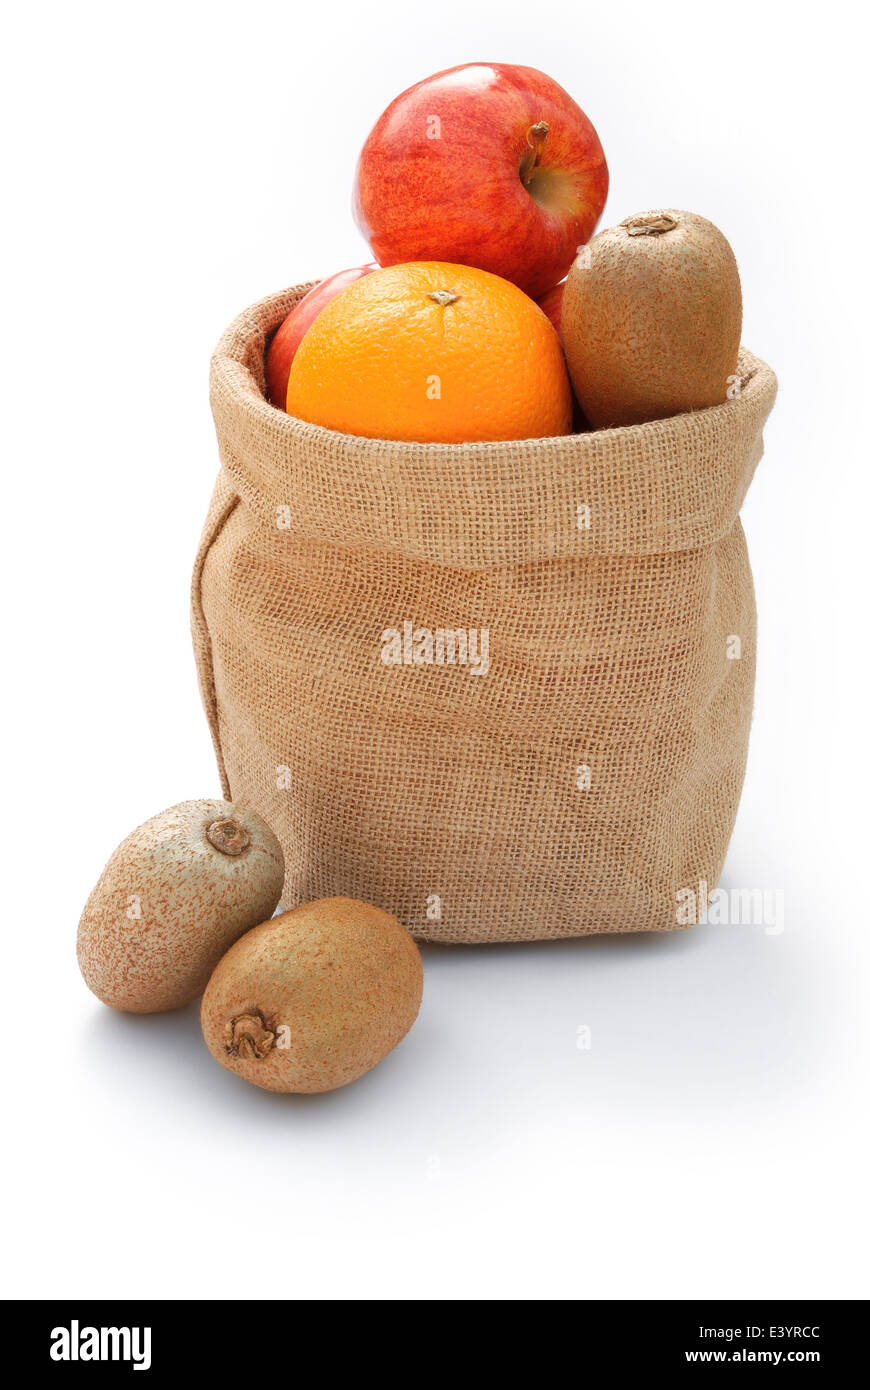 fruit in gunny bag on white Stock Photo